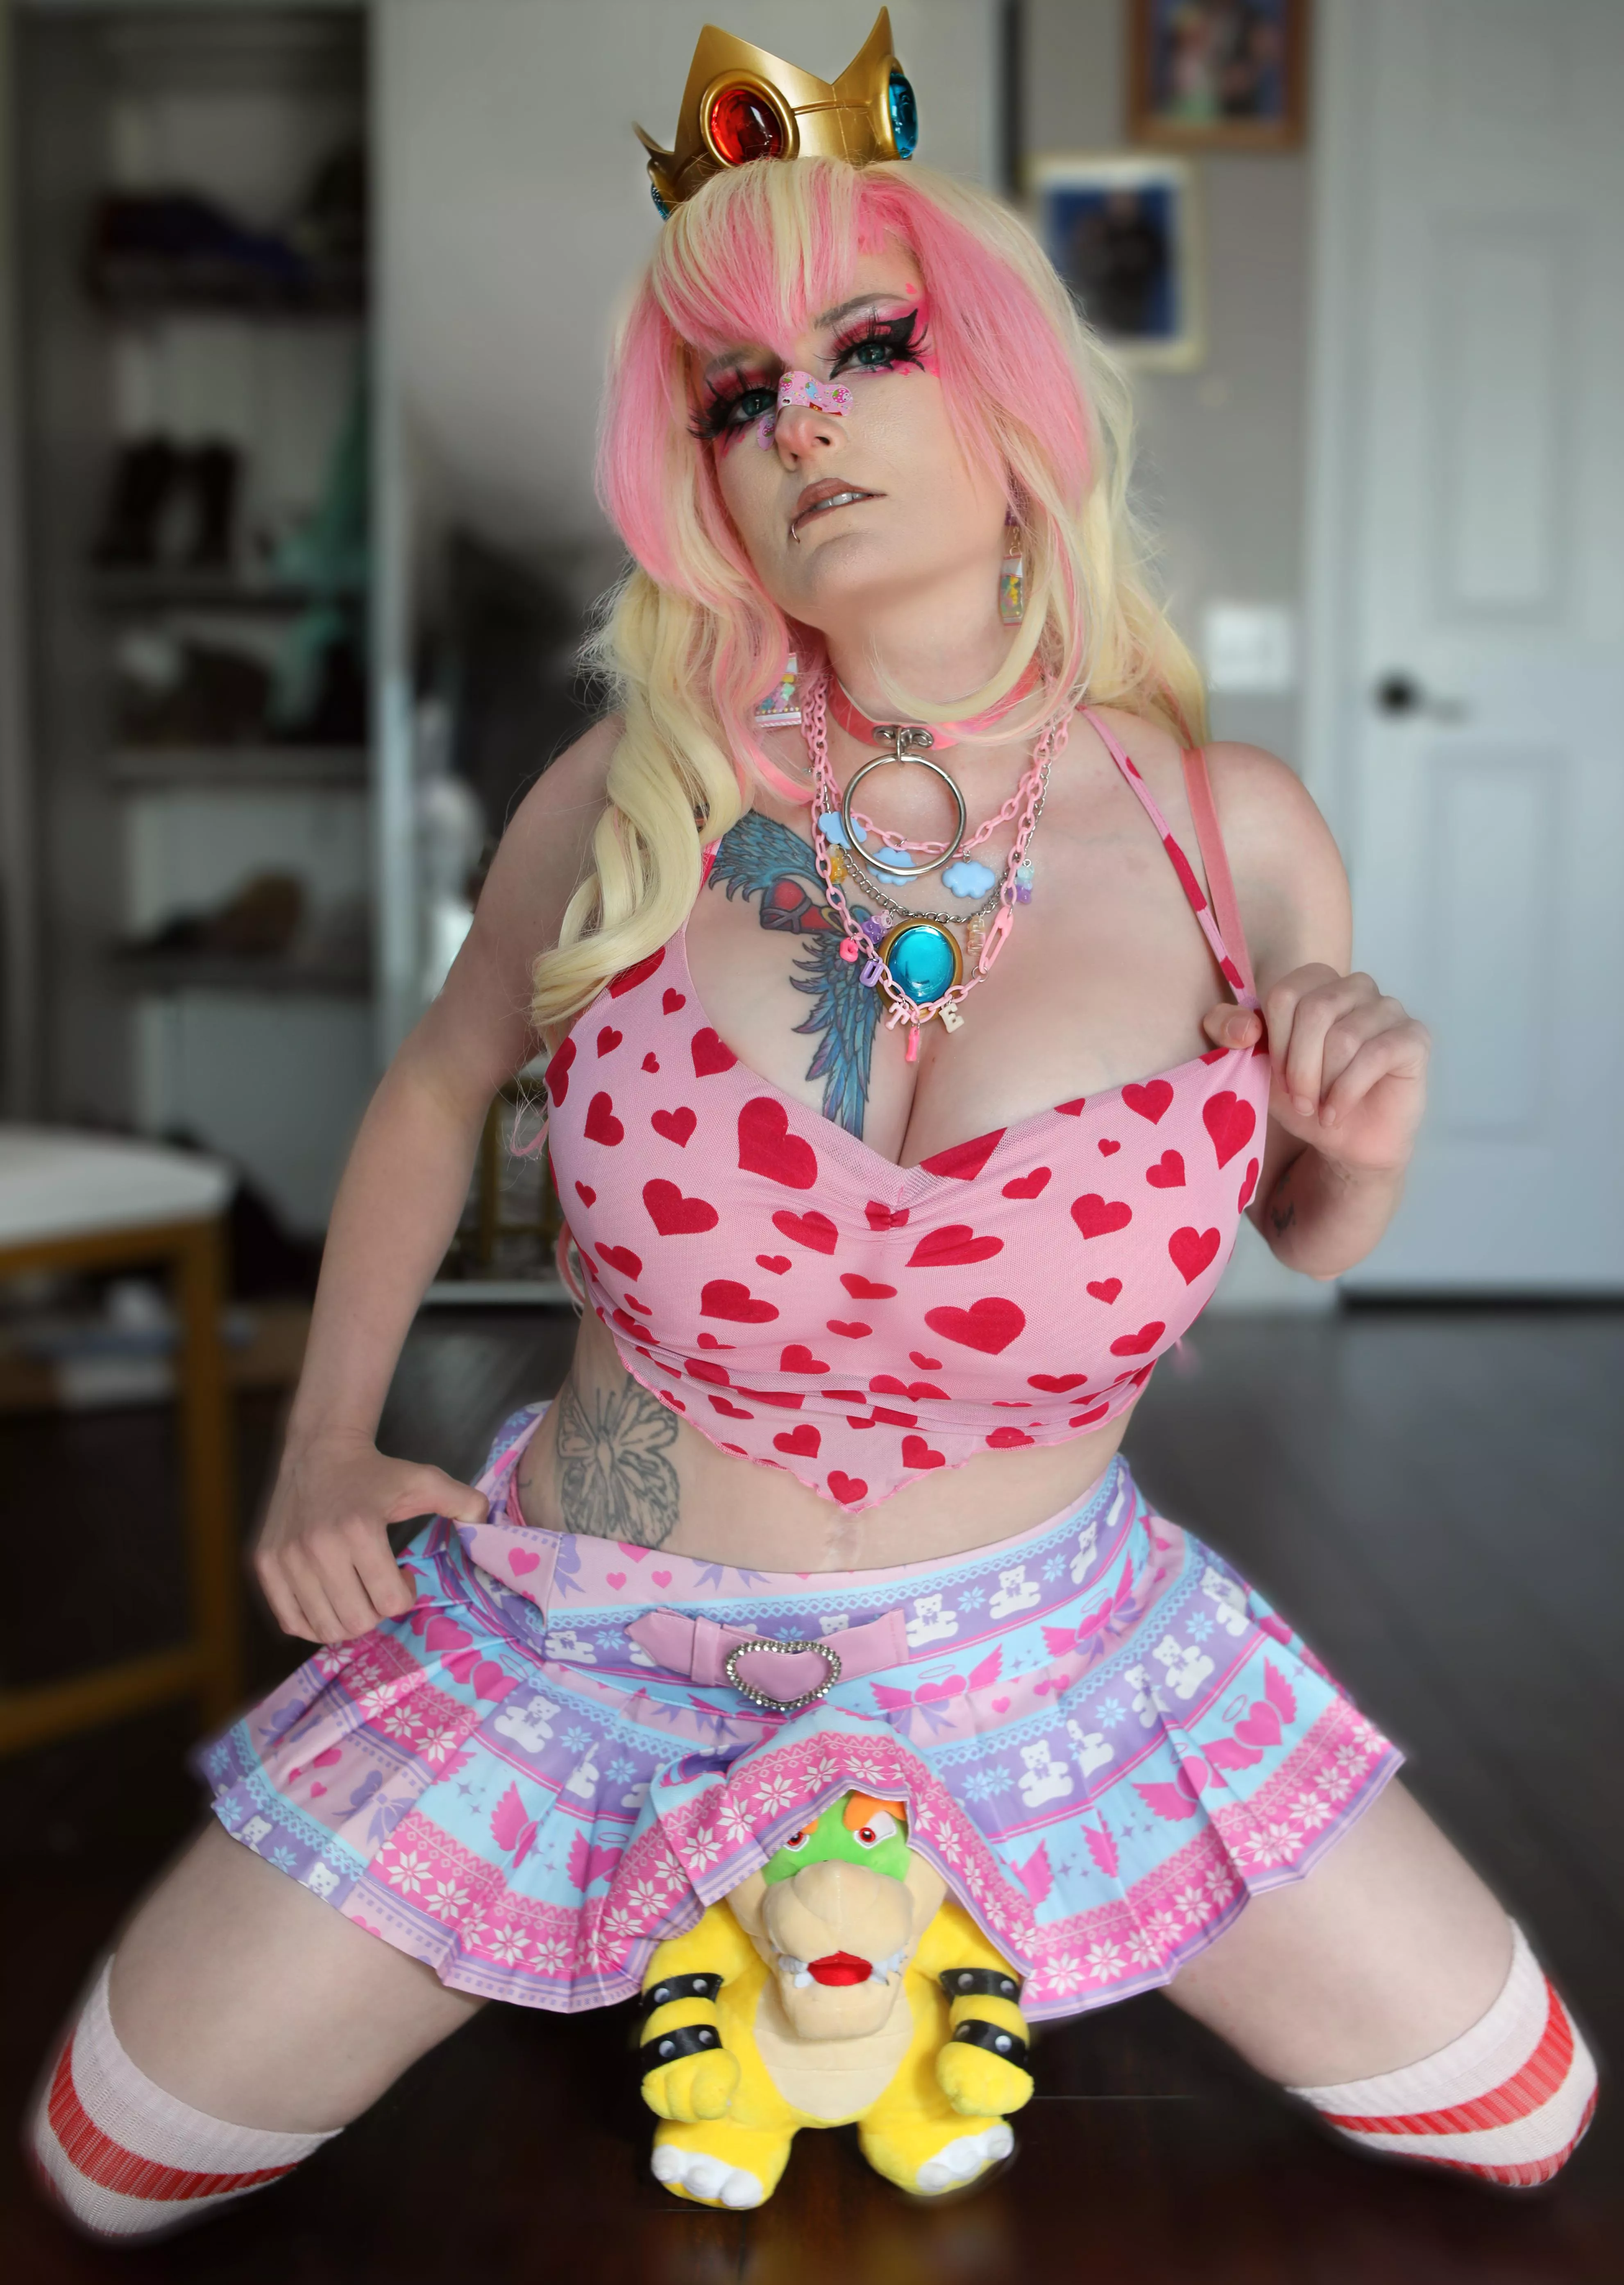 Princess Peach Cosplay Porn - Egirl Princess Peach cosplay by Captive Cosplay nudes by Captive_Cosplay